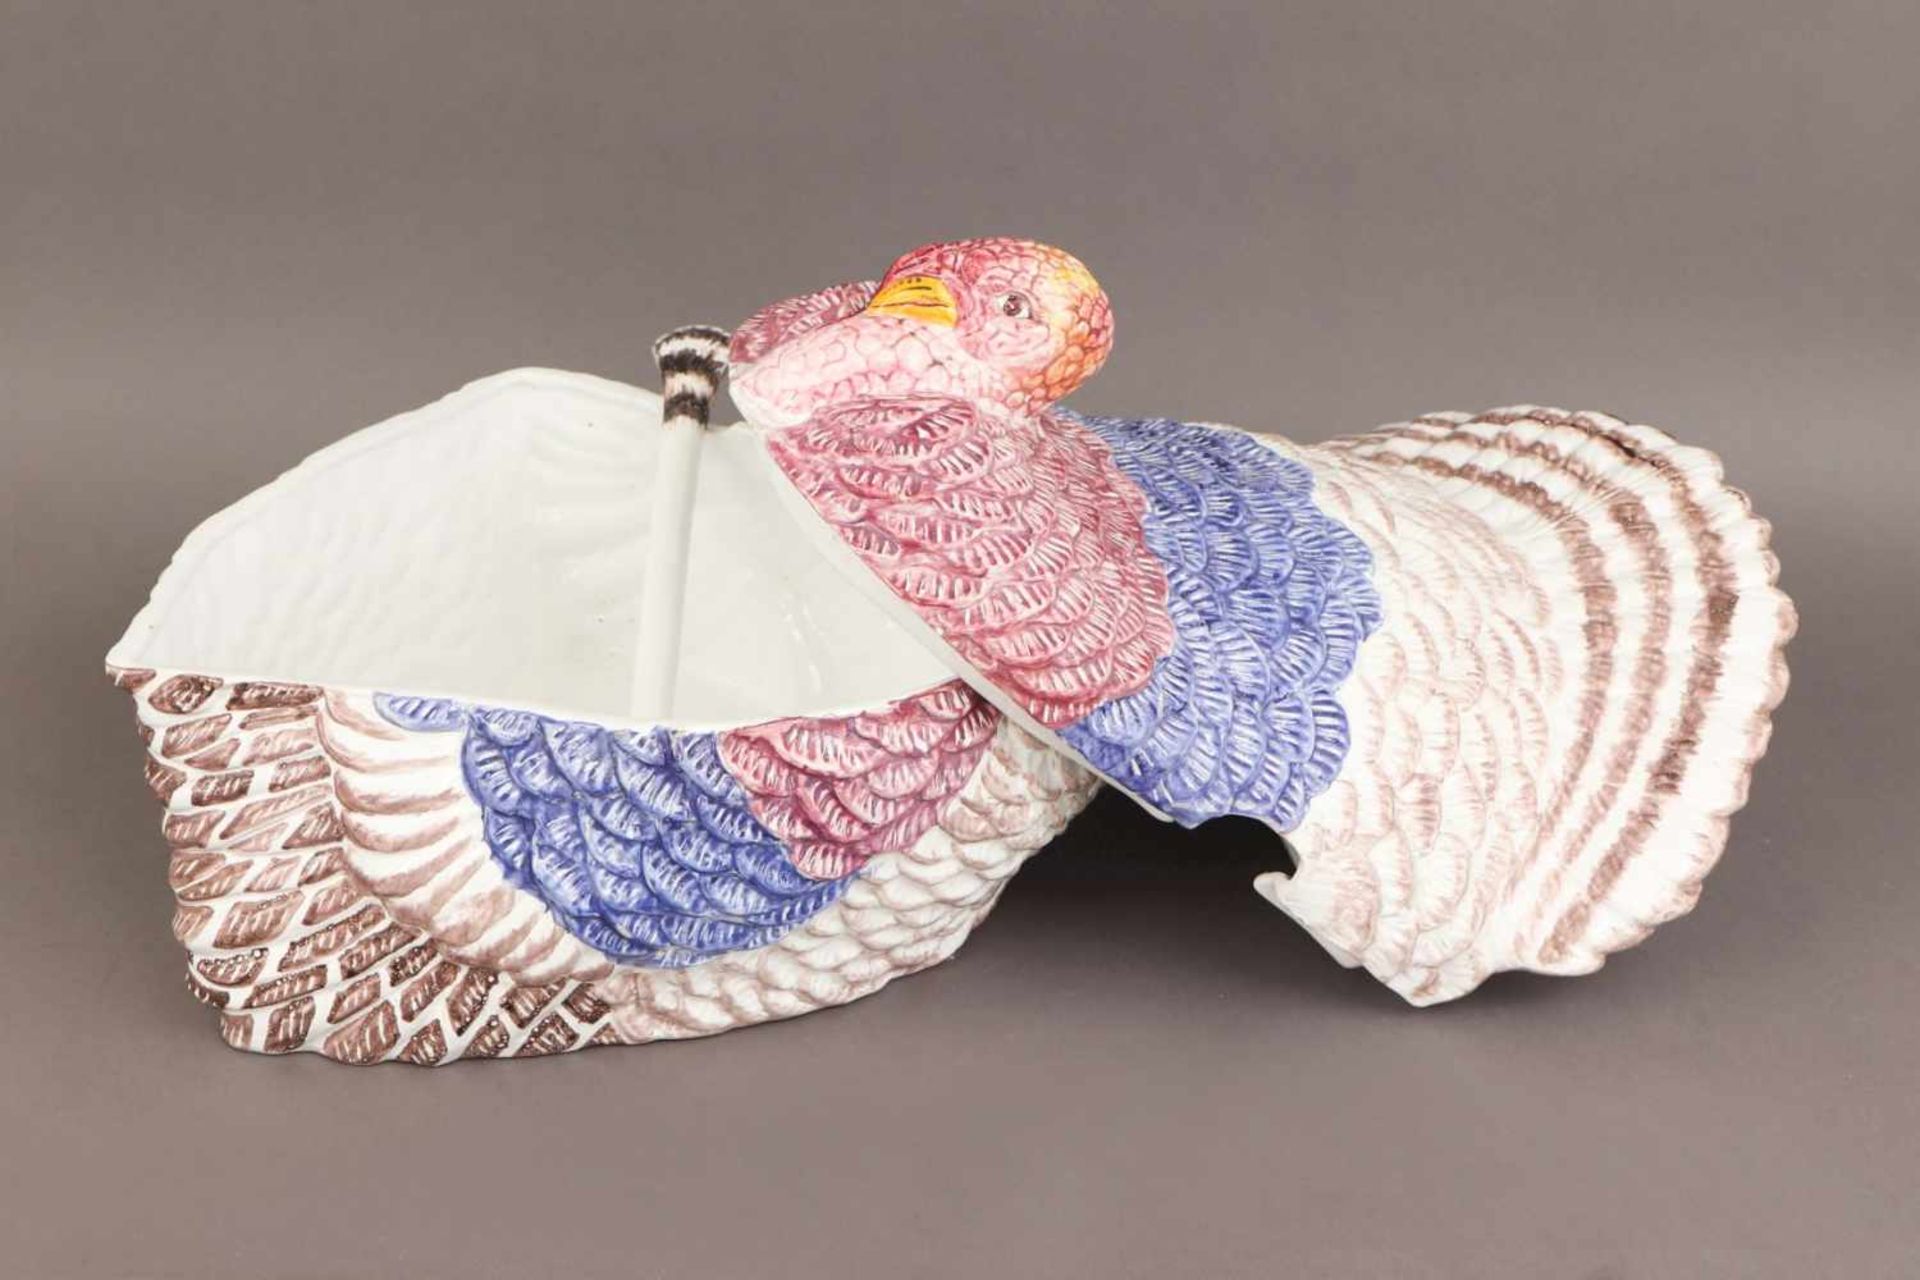 Keramik/Fayence Terrine in Form eines Truthahnswohl Italien, 20. Jhdt., farbig bemalt, hell - Bild 3 aus 3